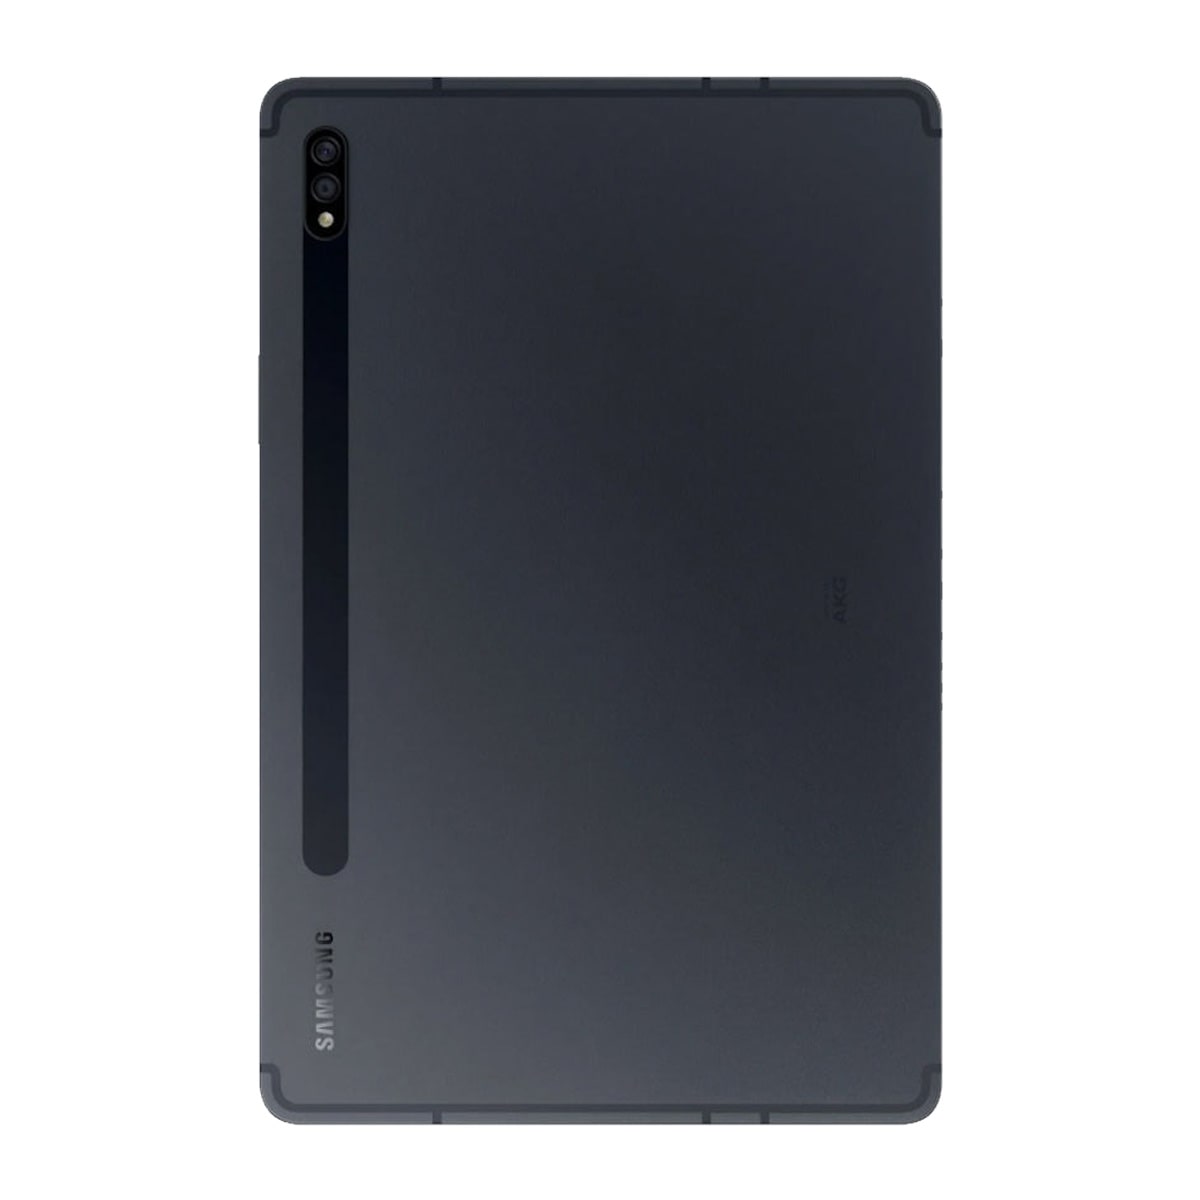 تبلت سامسونگ مدل Galaxy Tab S7 Plus T975 به همراه S Pen ظرفیت 128 گیگابایت